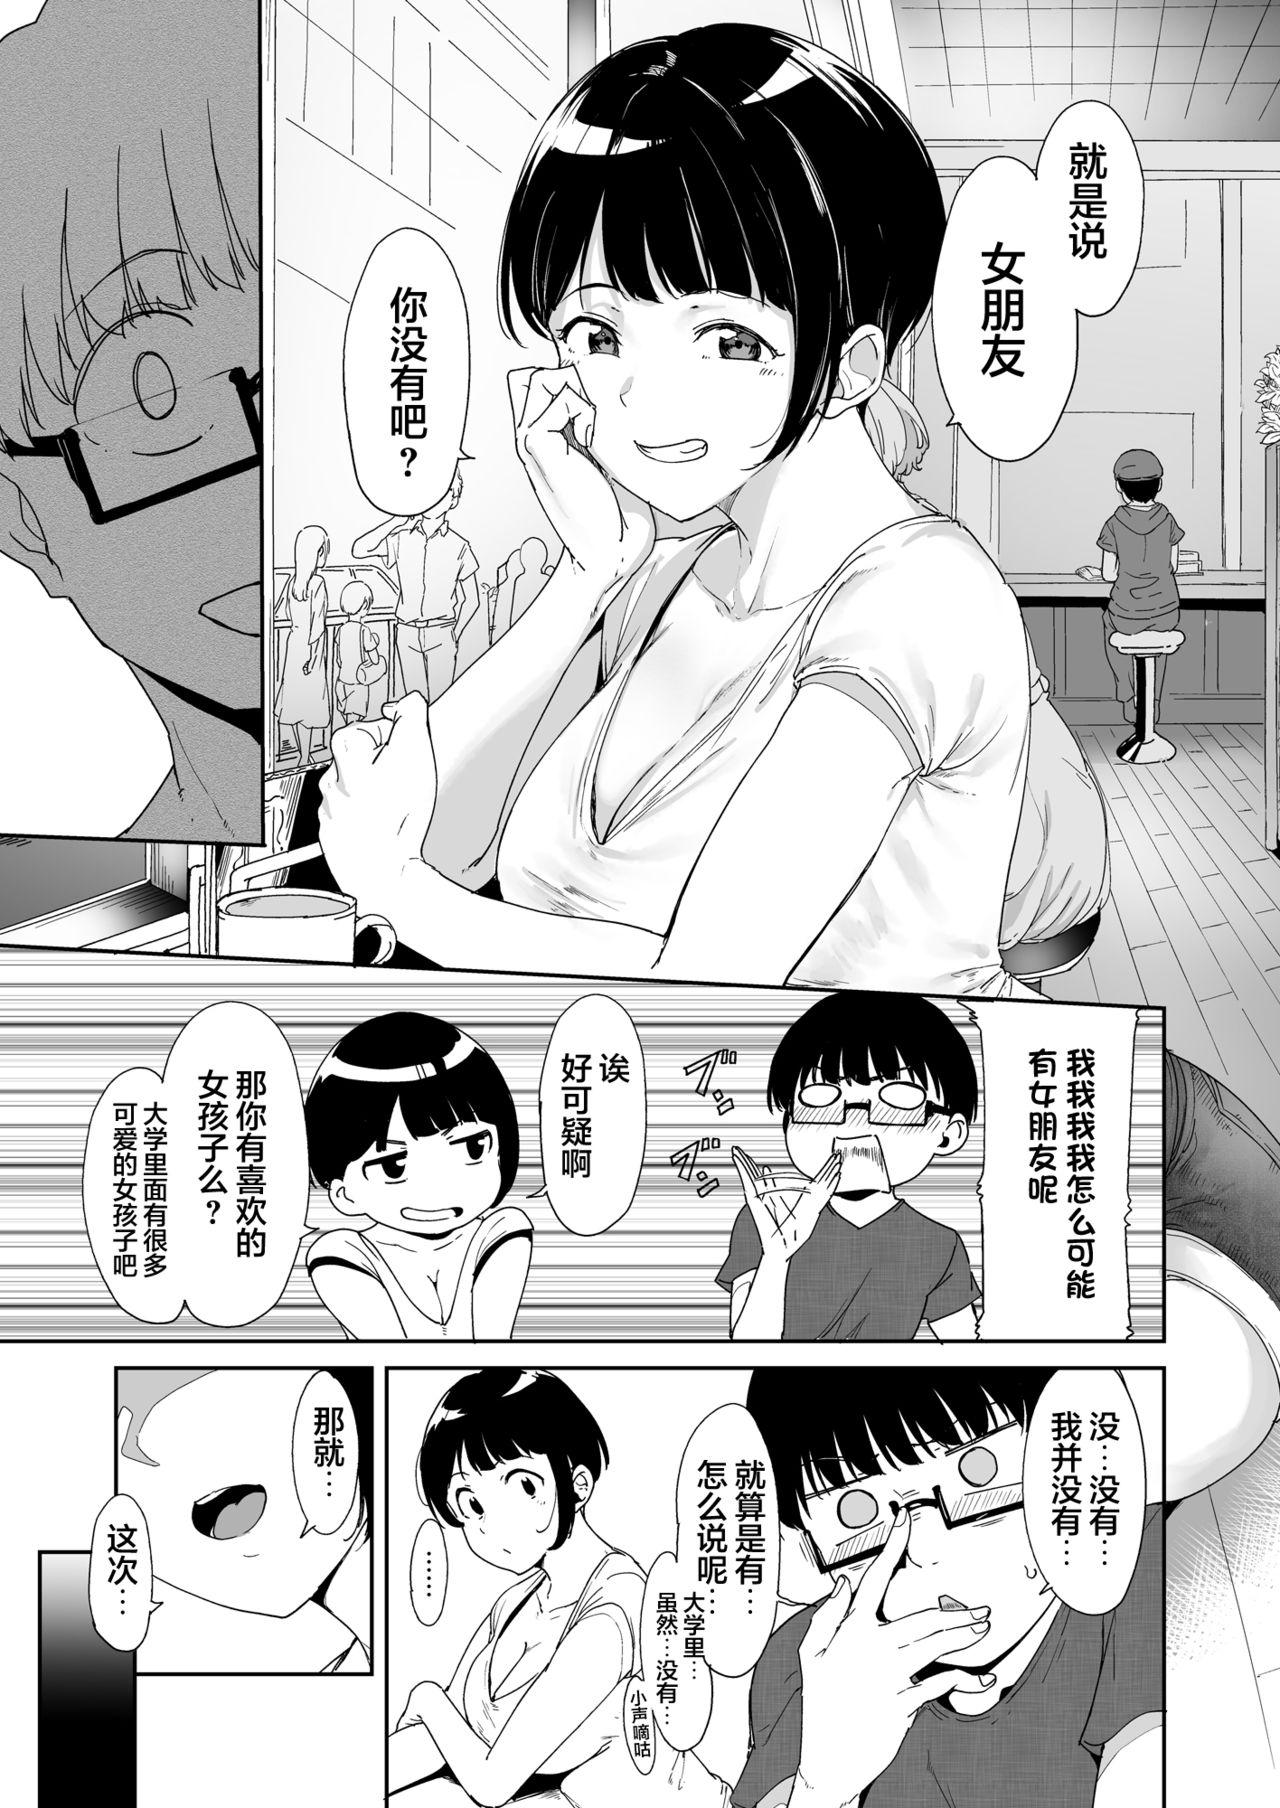 Sucks Akogare Kanojo no Risou to Genjitsu - Original Office - Page 9